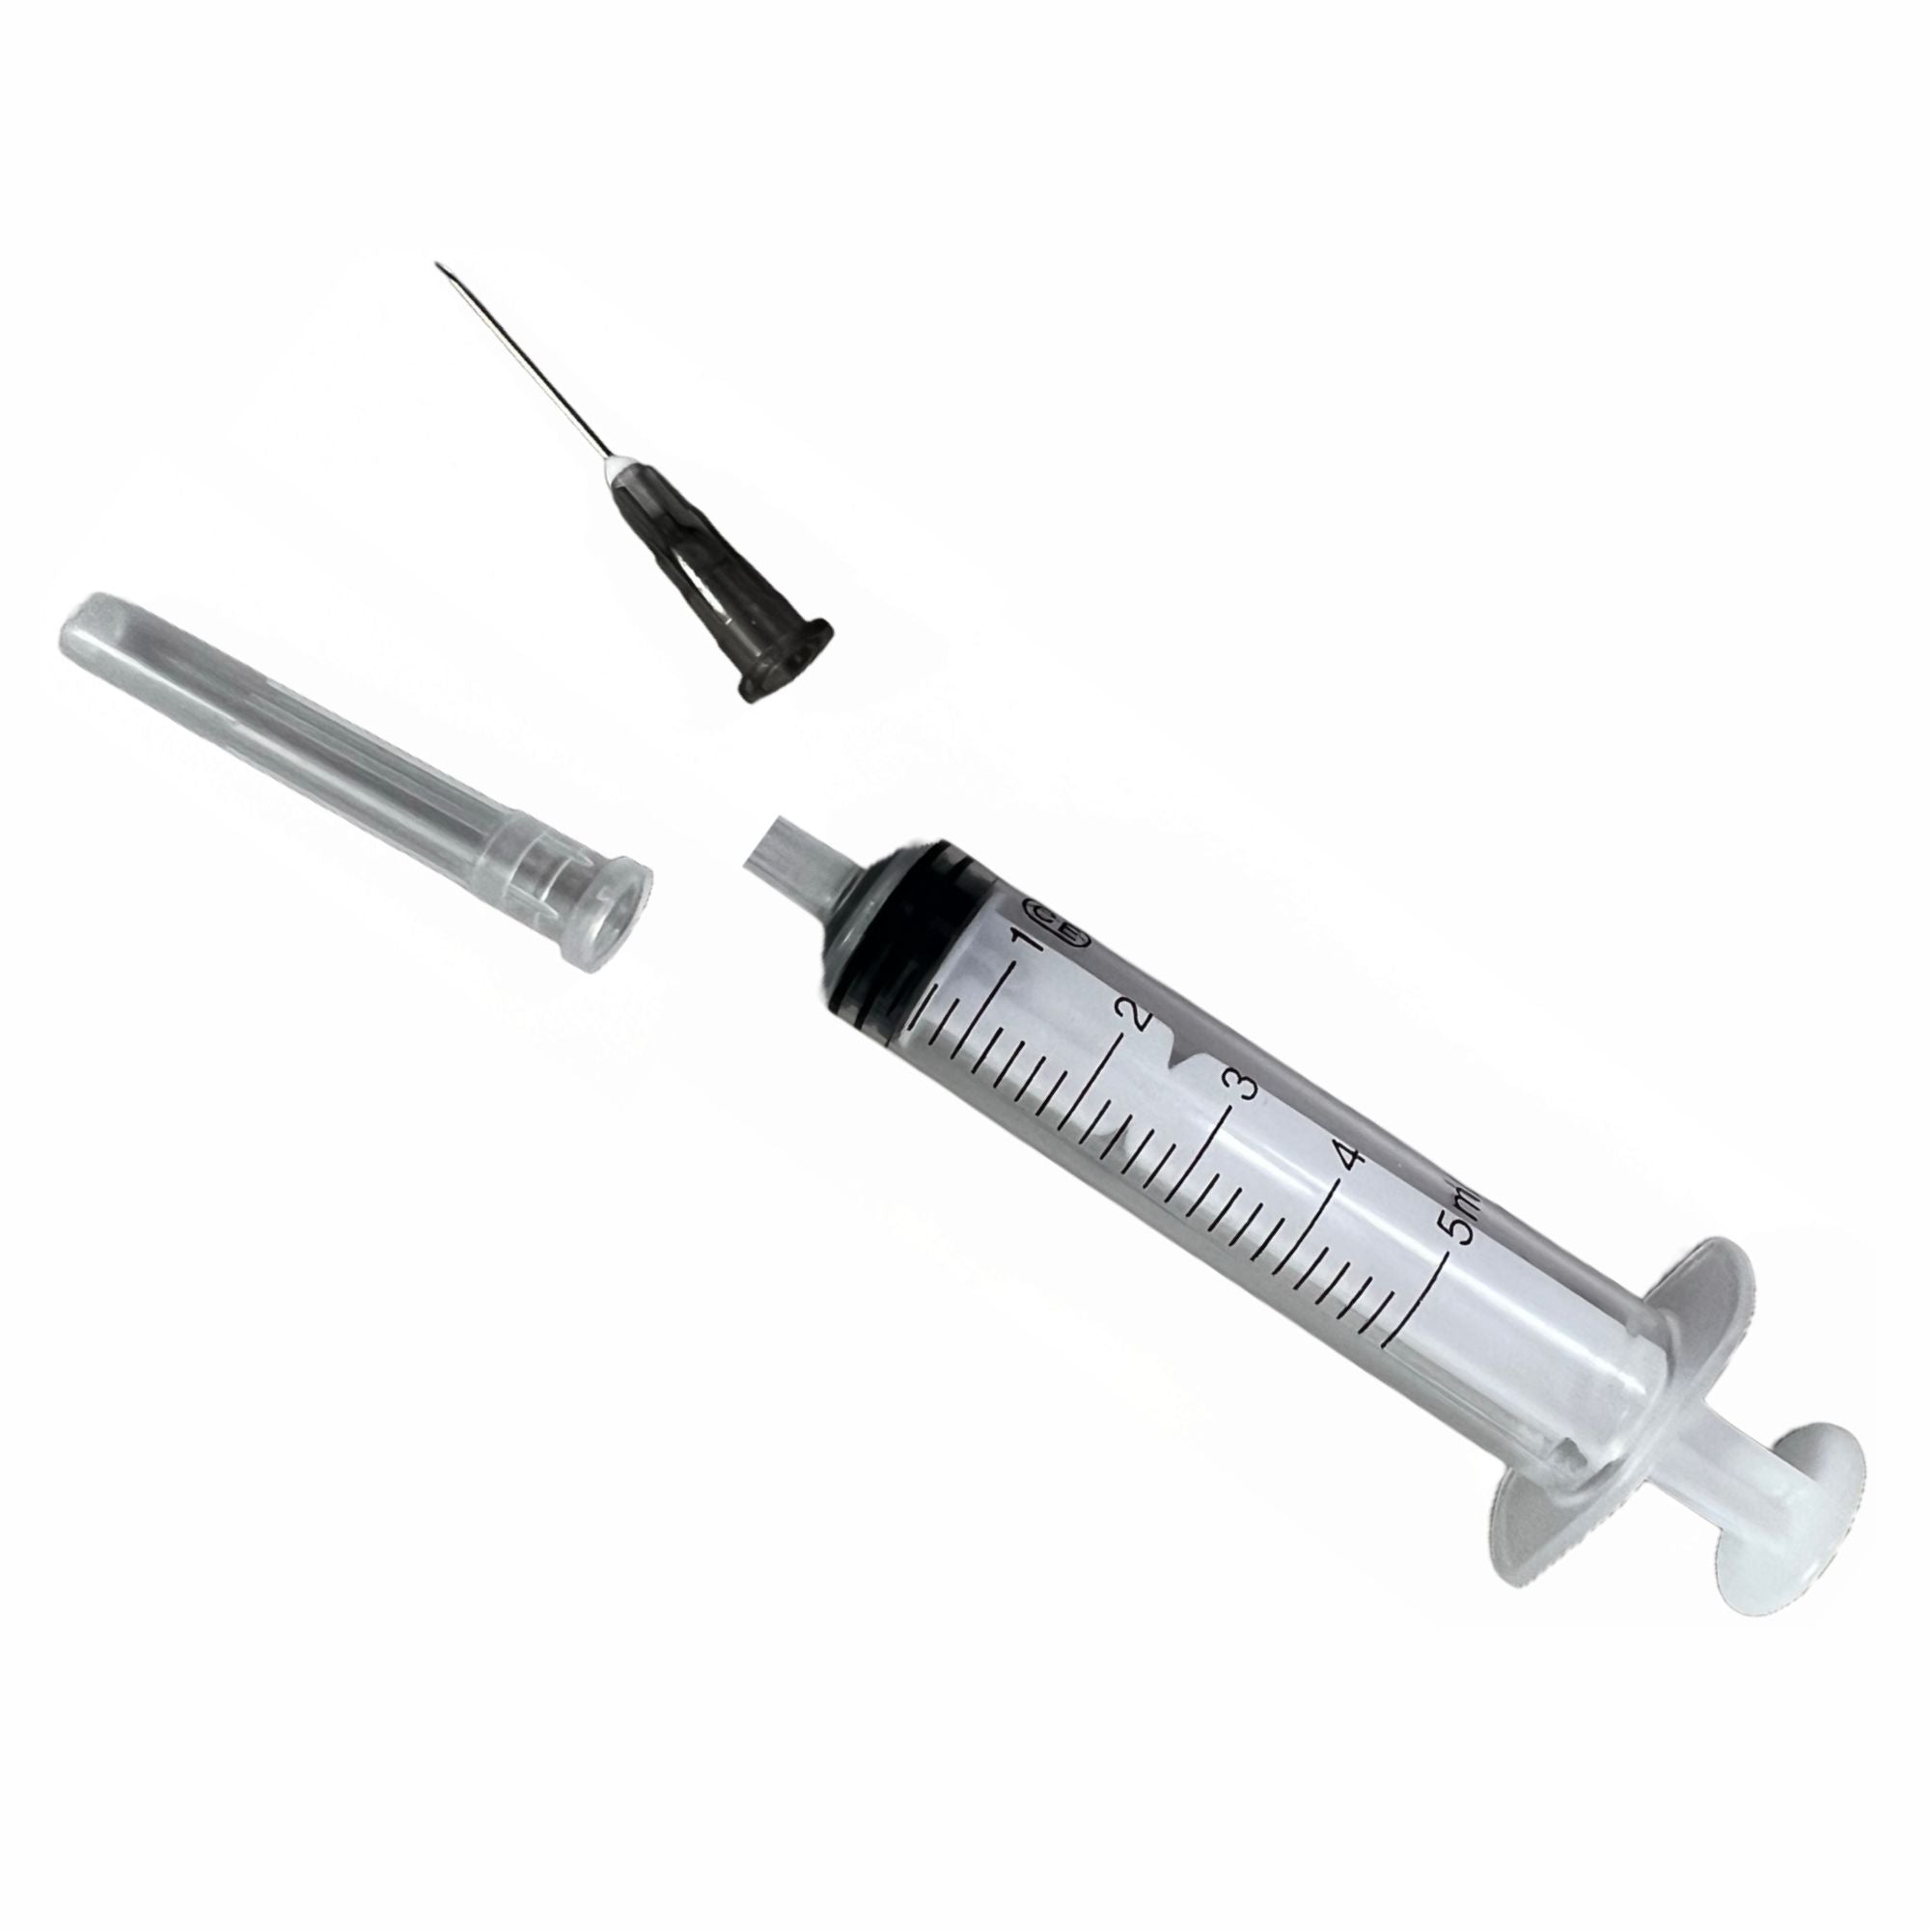 5ml Syringe - Parts